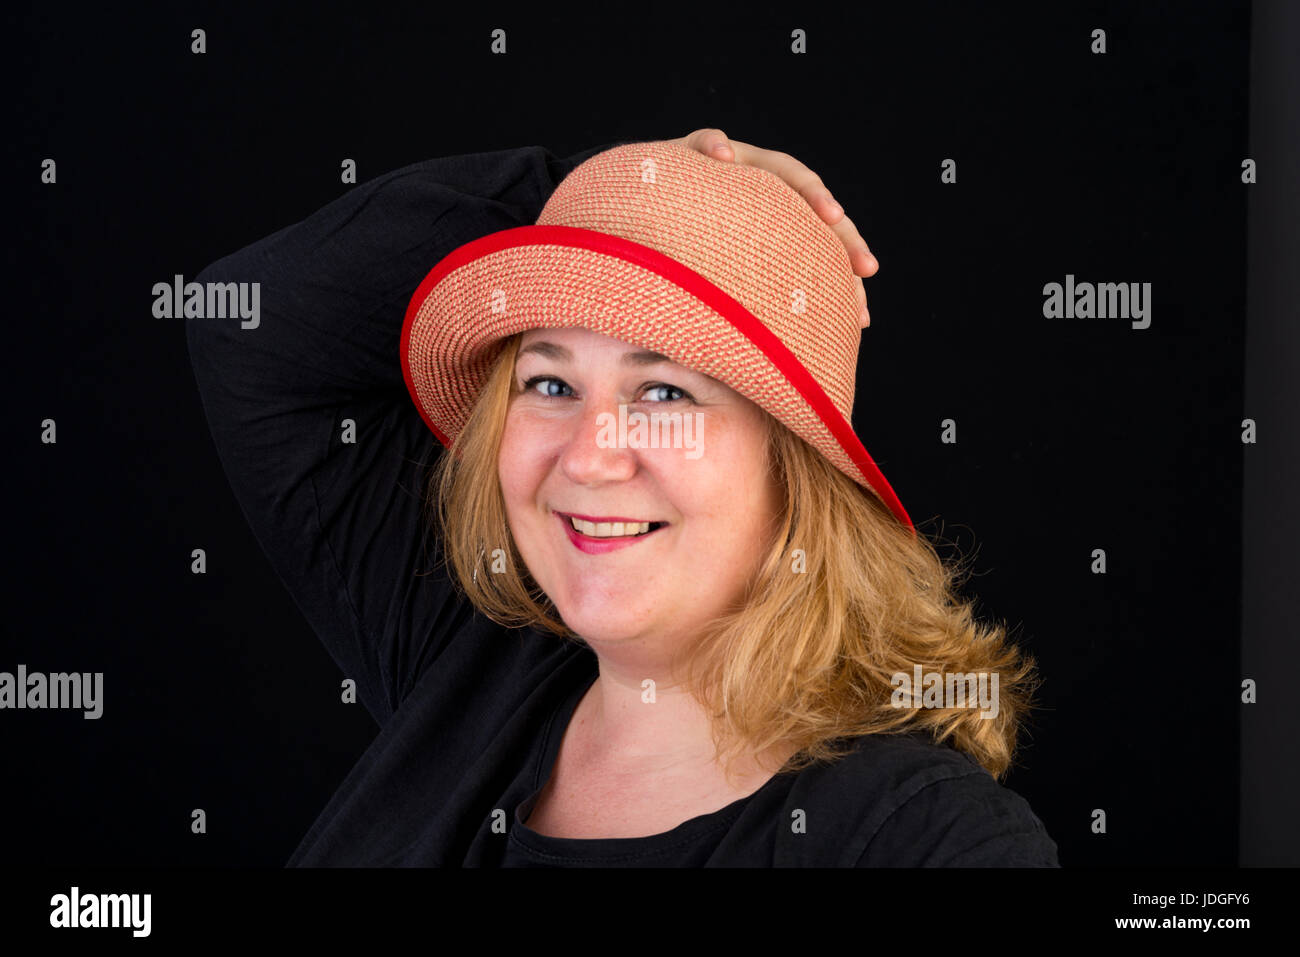 Portrait of a happy belle lumière européenne surpondérés red haired femme posant avec une red hat - studio shot sur fond noir Banque D'Images